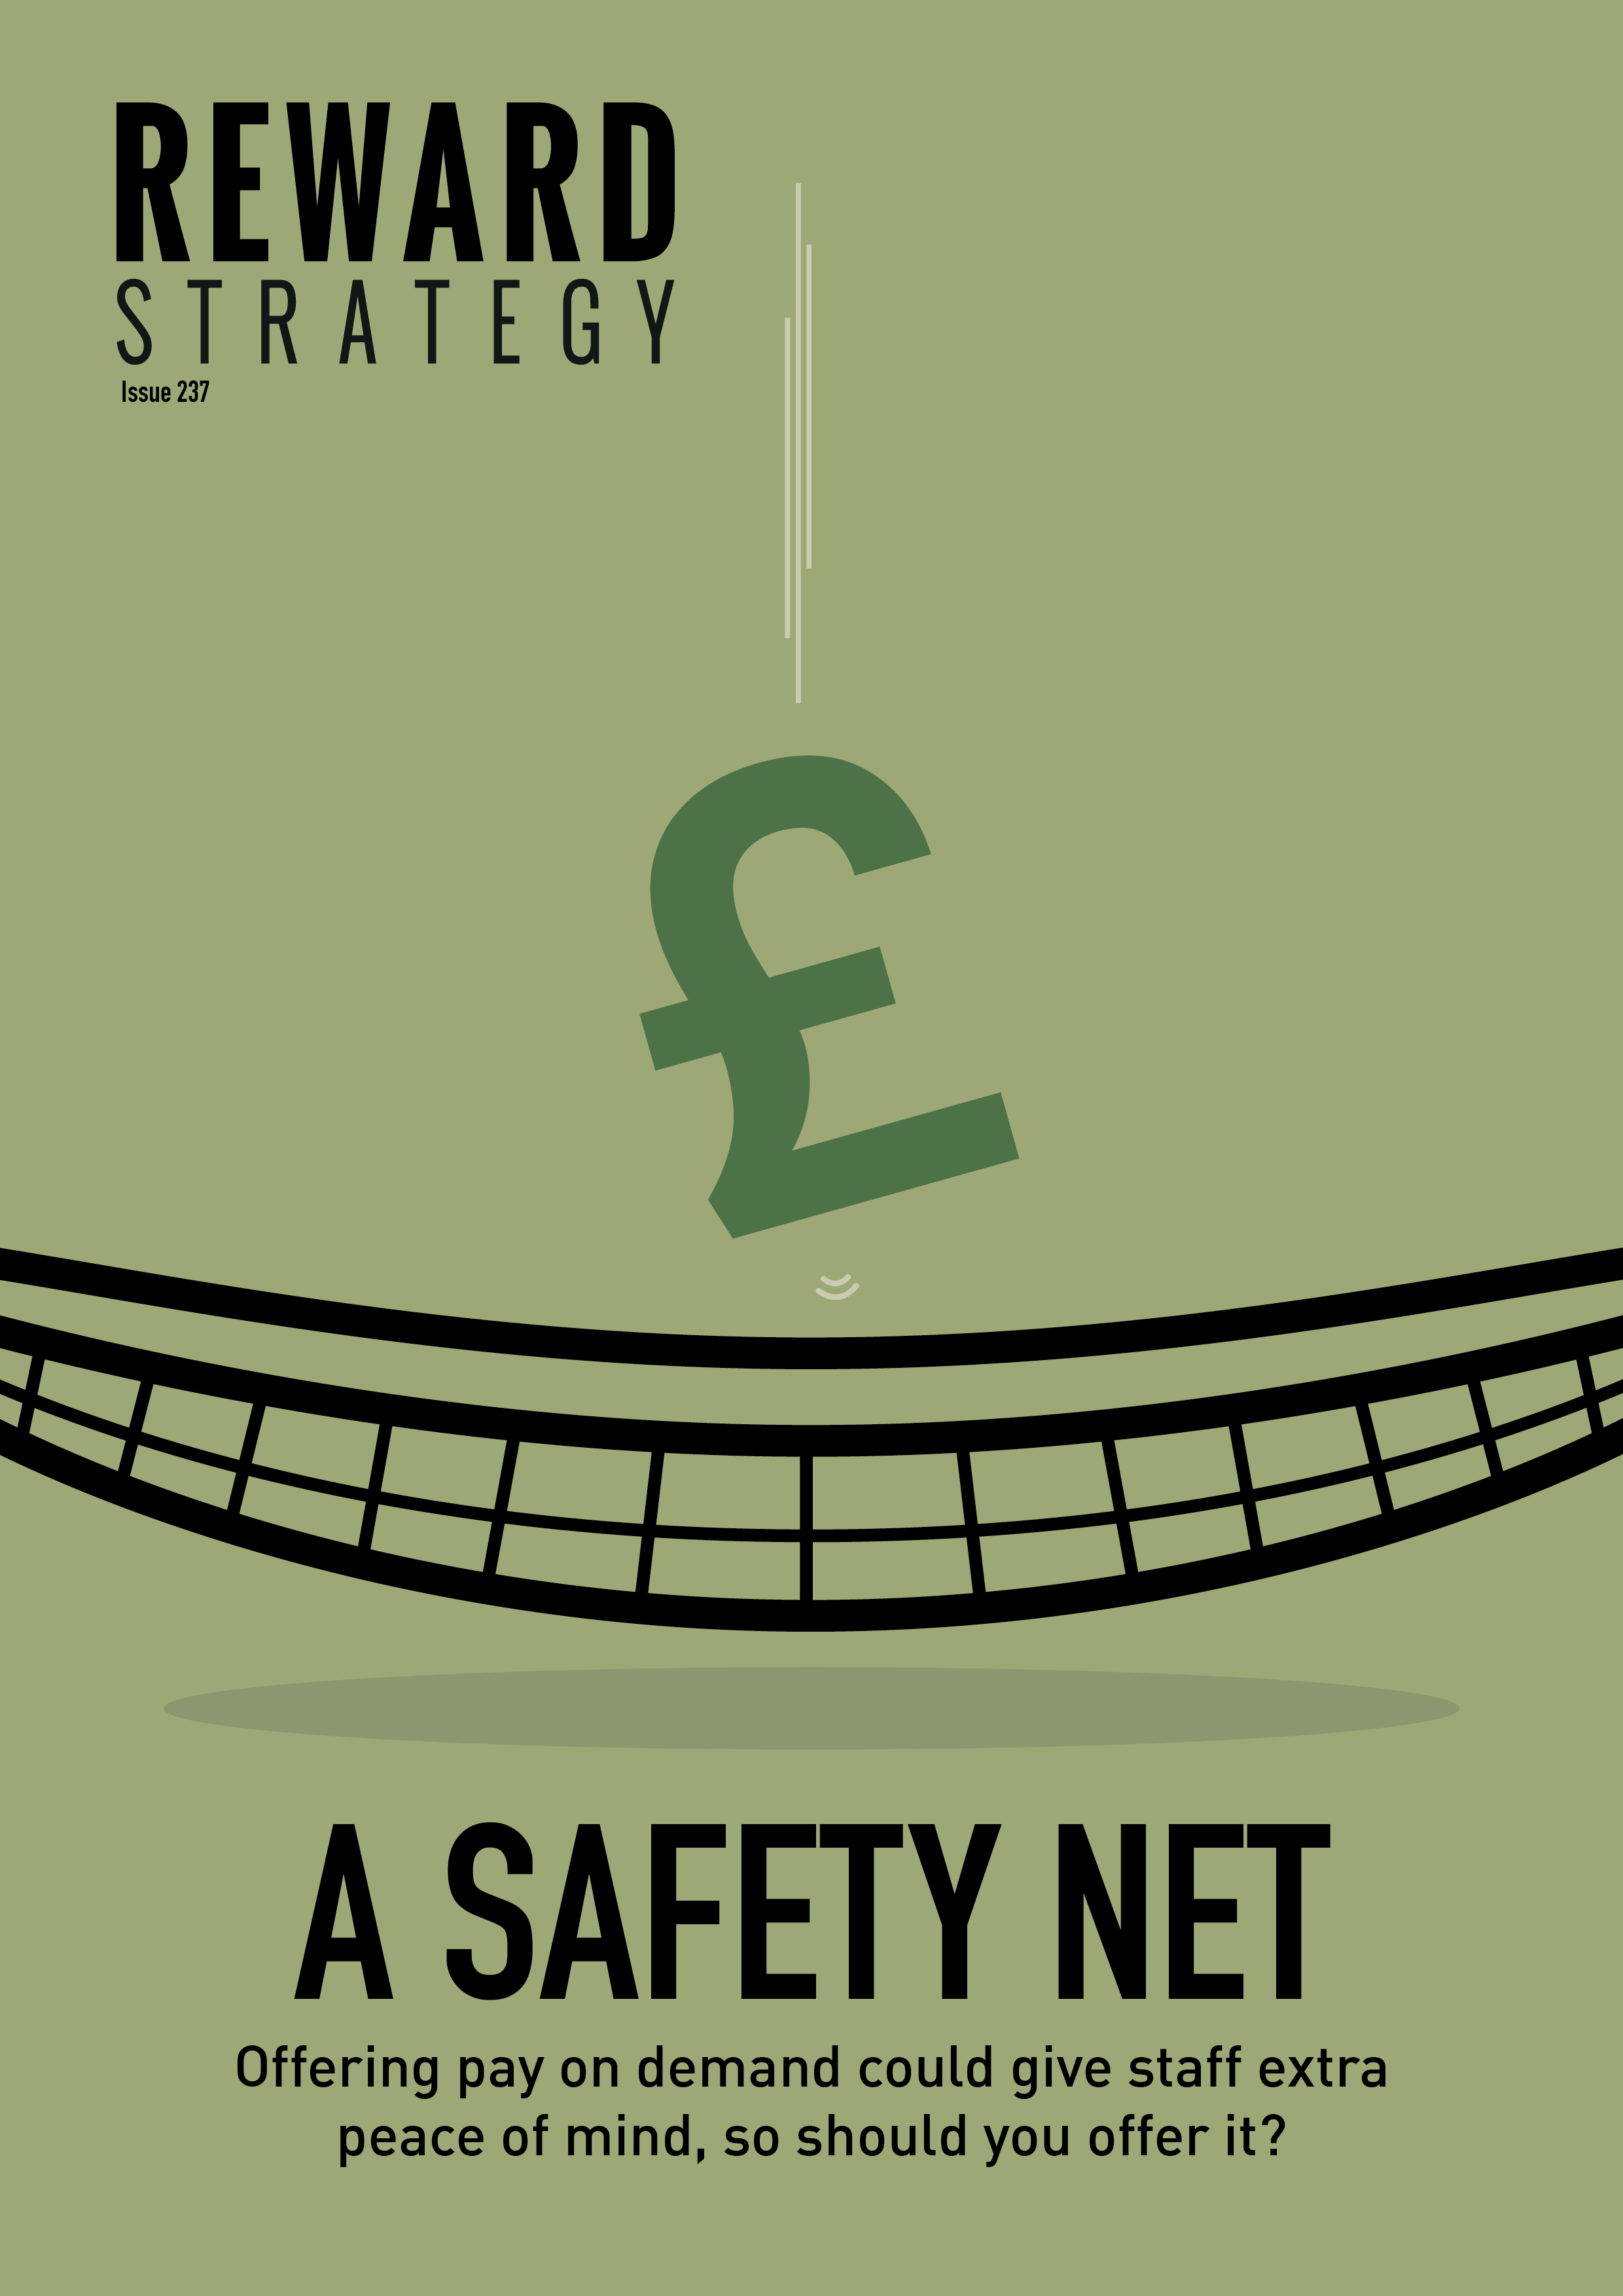 A safety net